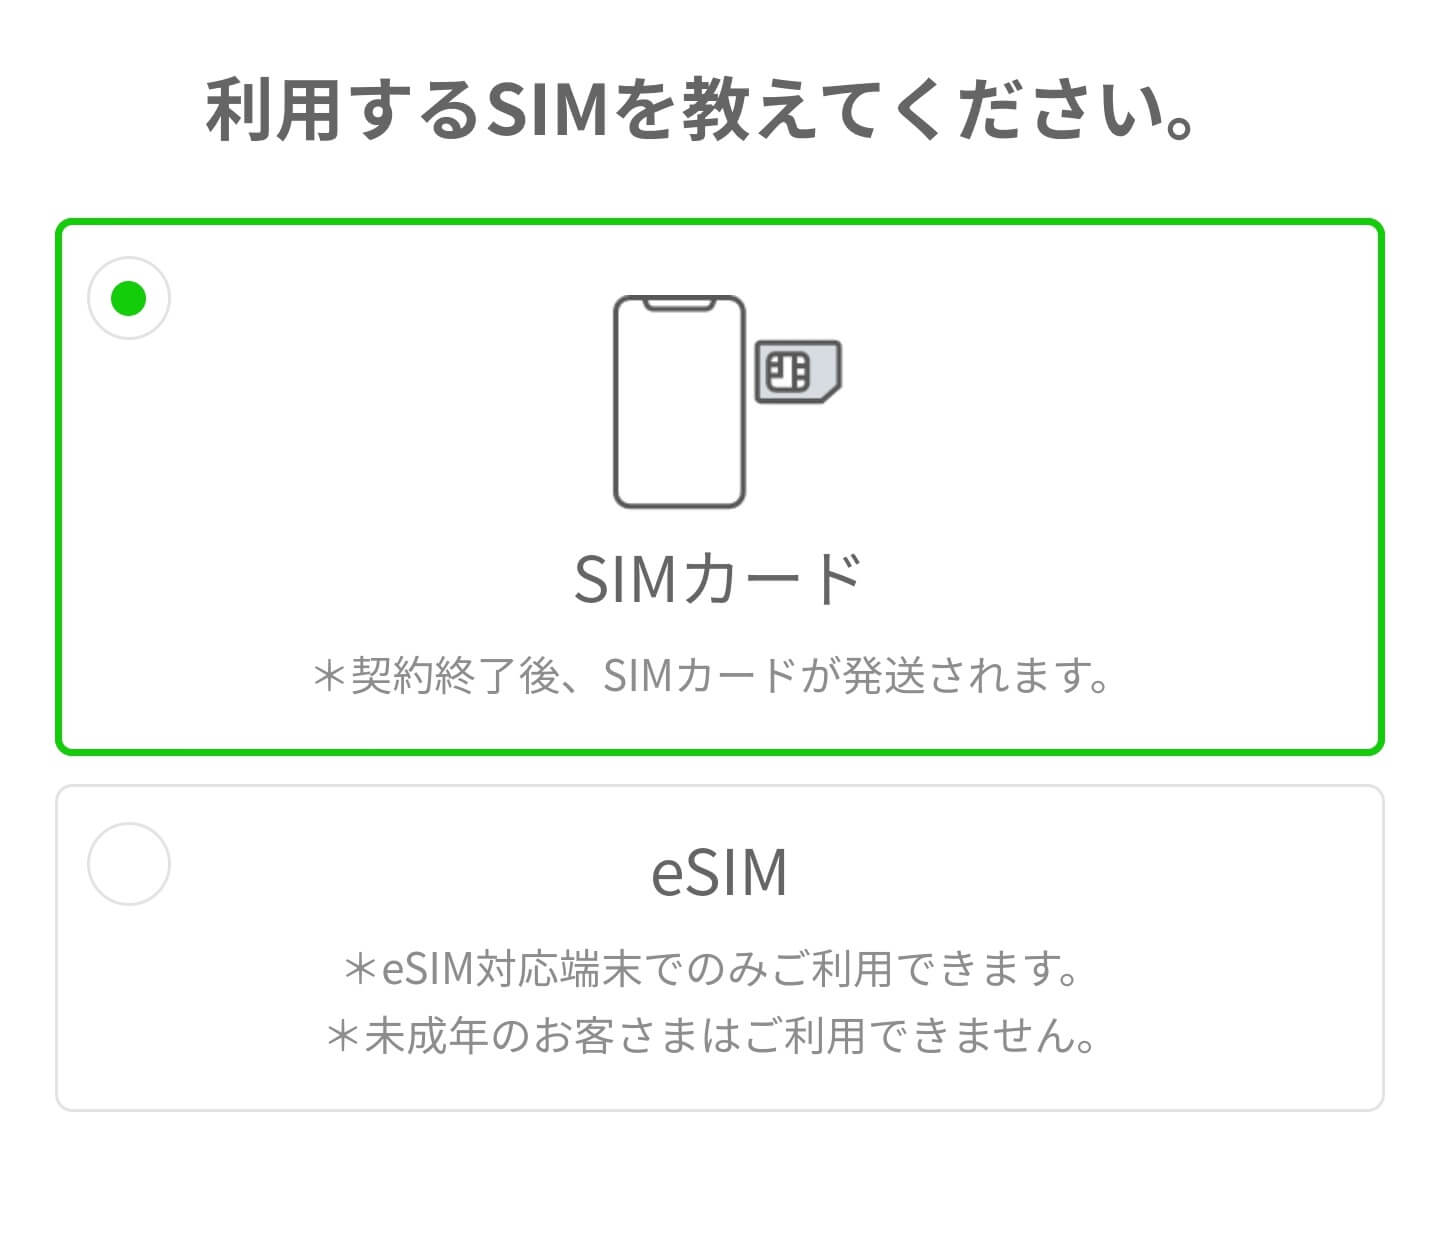 【必見】LINEMO(ラインモ)でiPhoneを購入して契約する方法 linemo-application-5